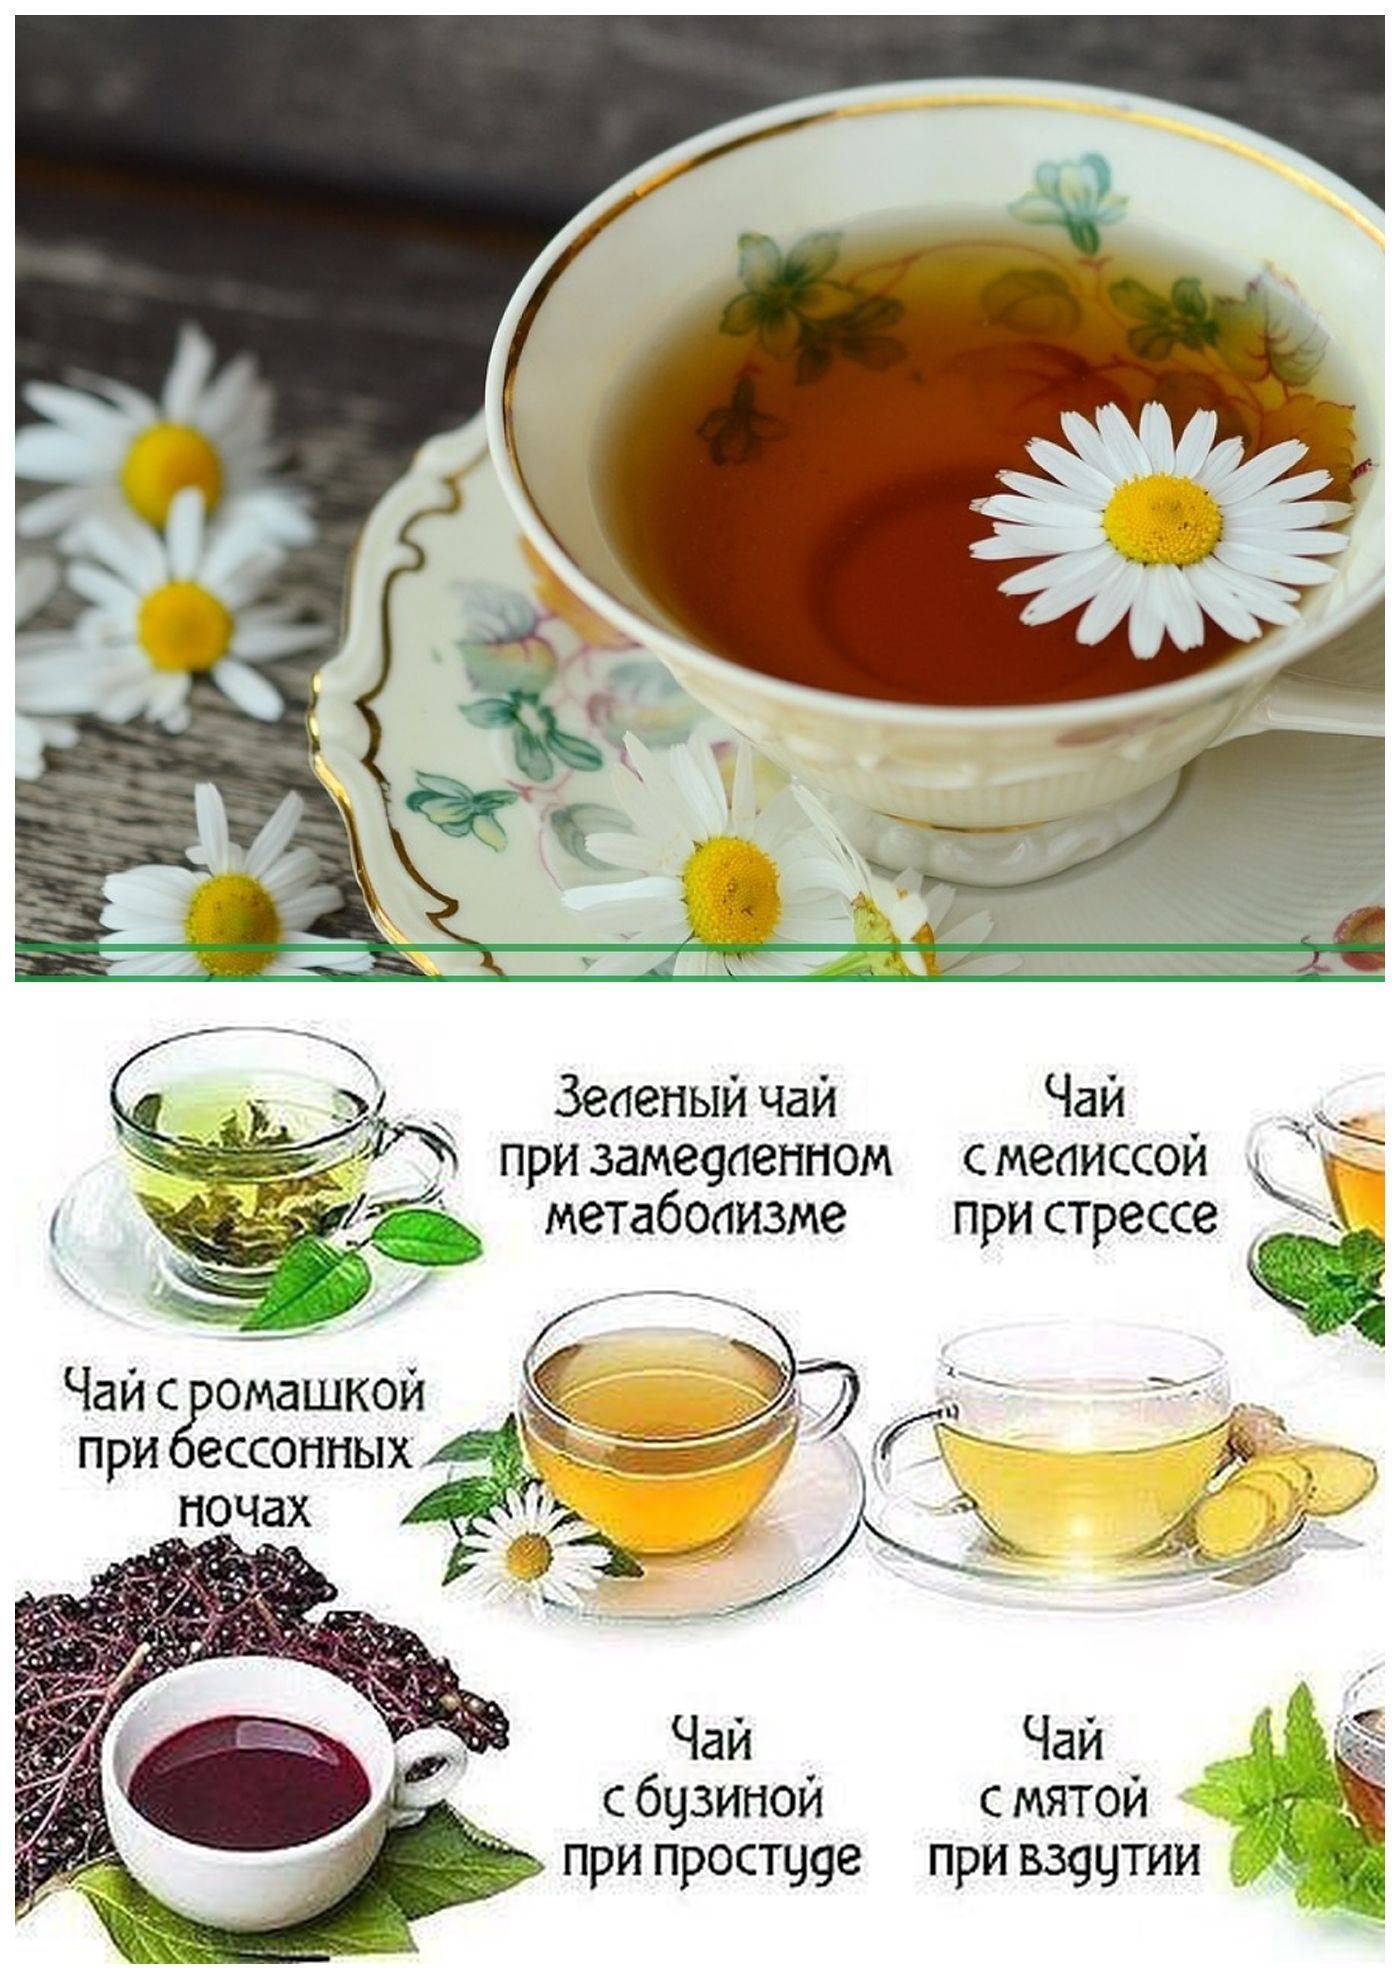 Чай кудин — польза и вред, советы врачей и противопоказания